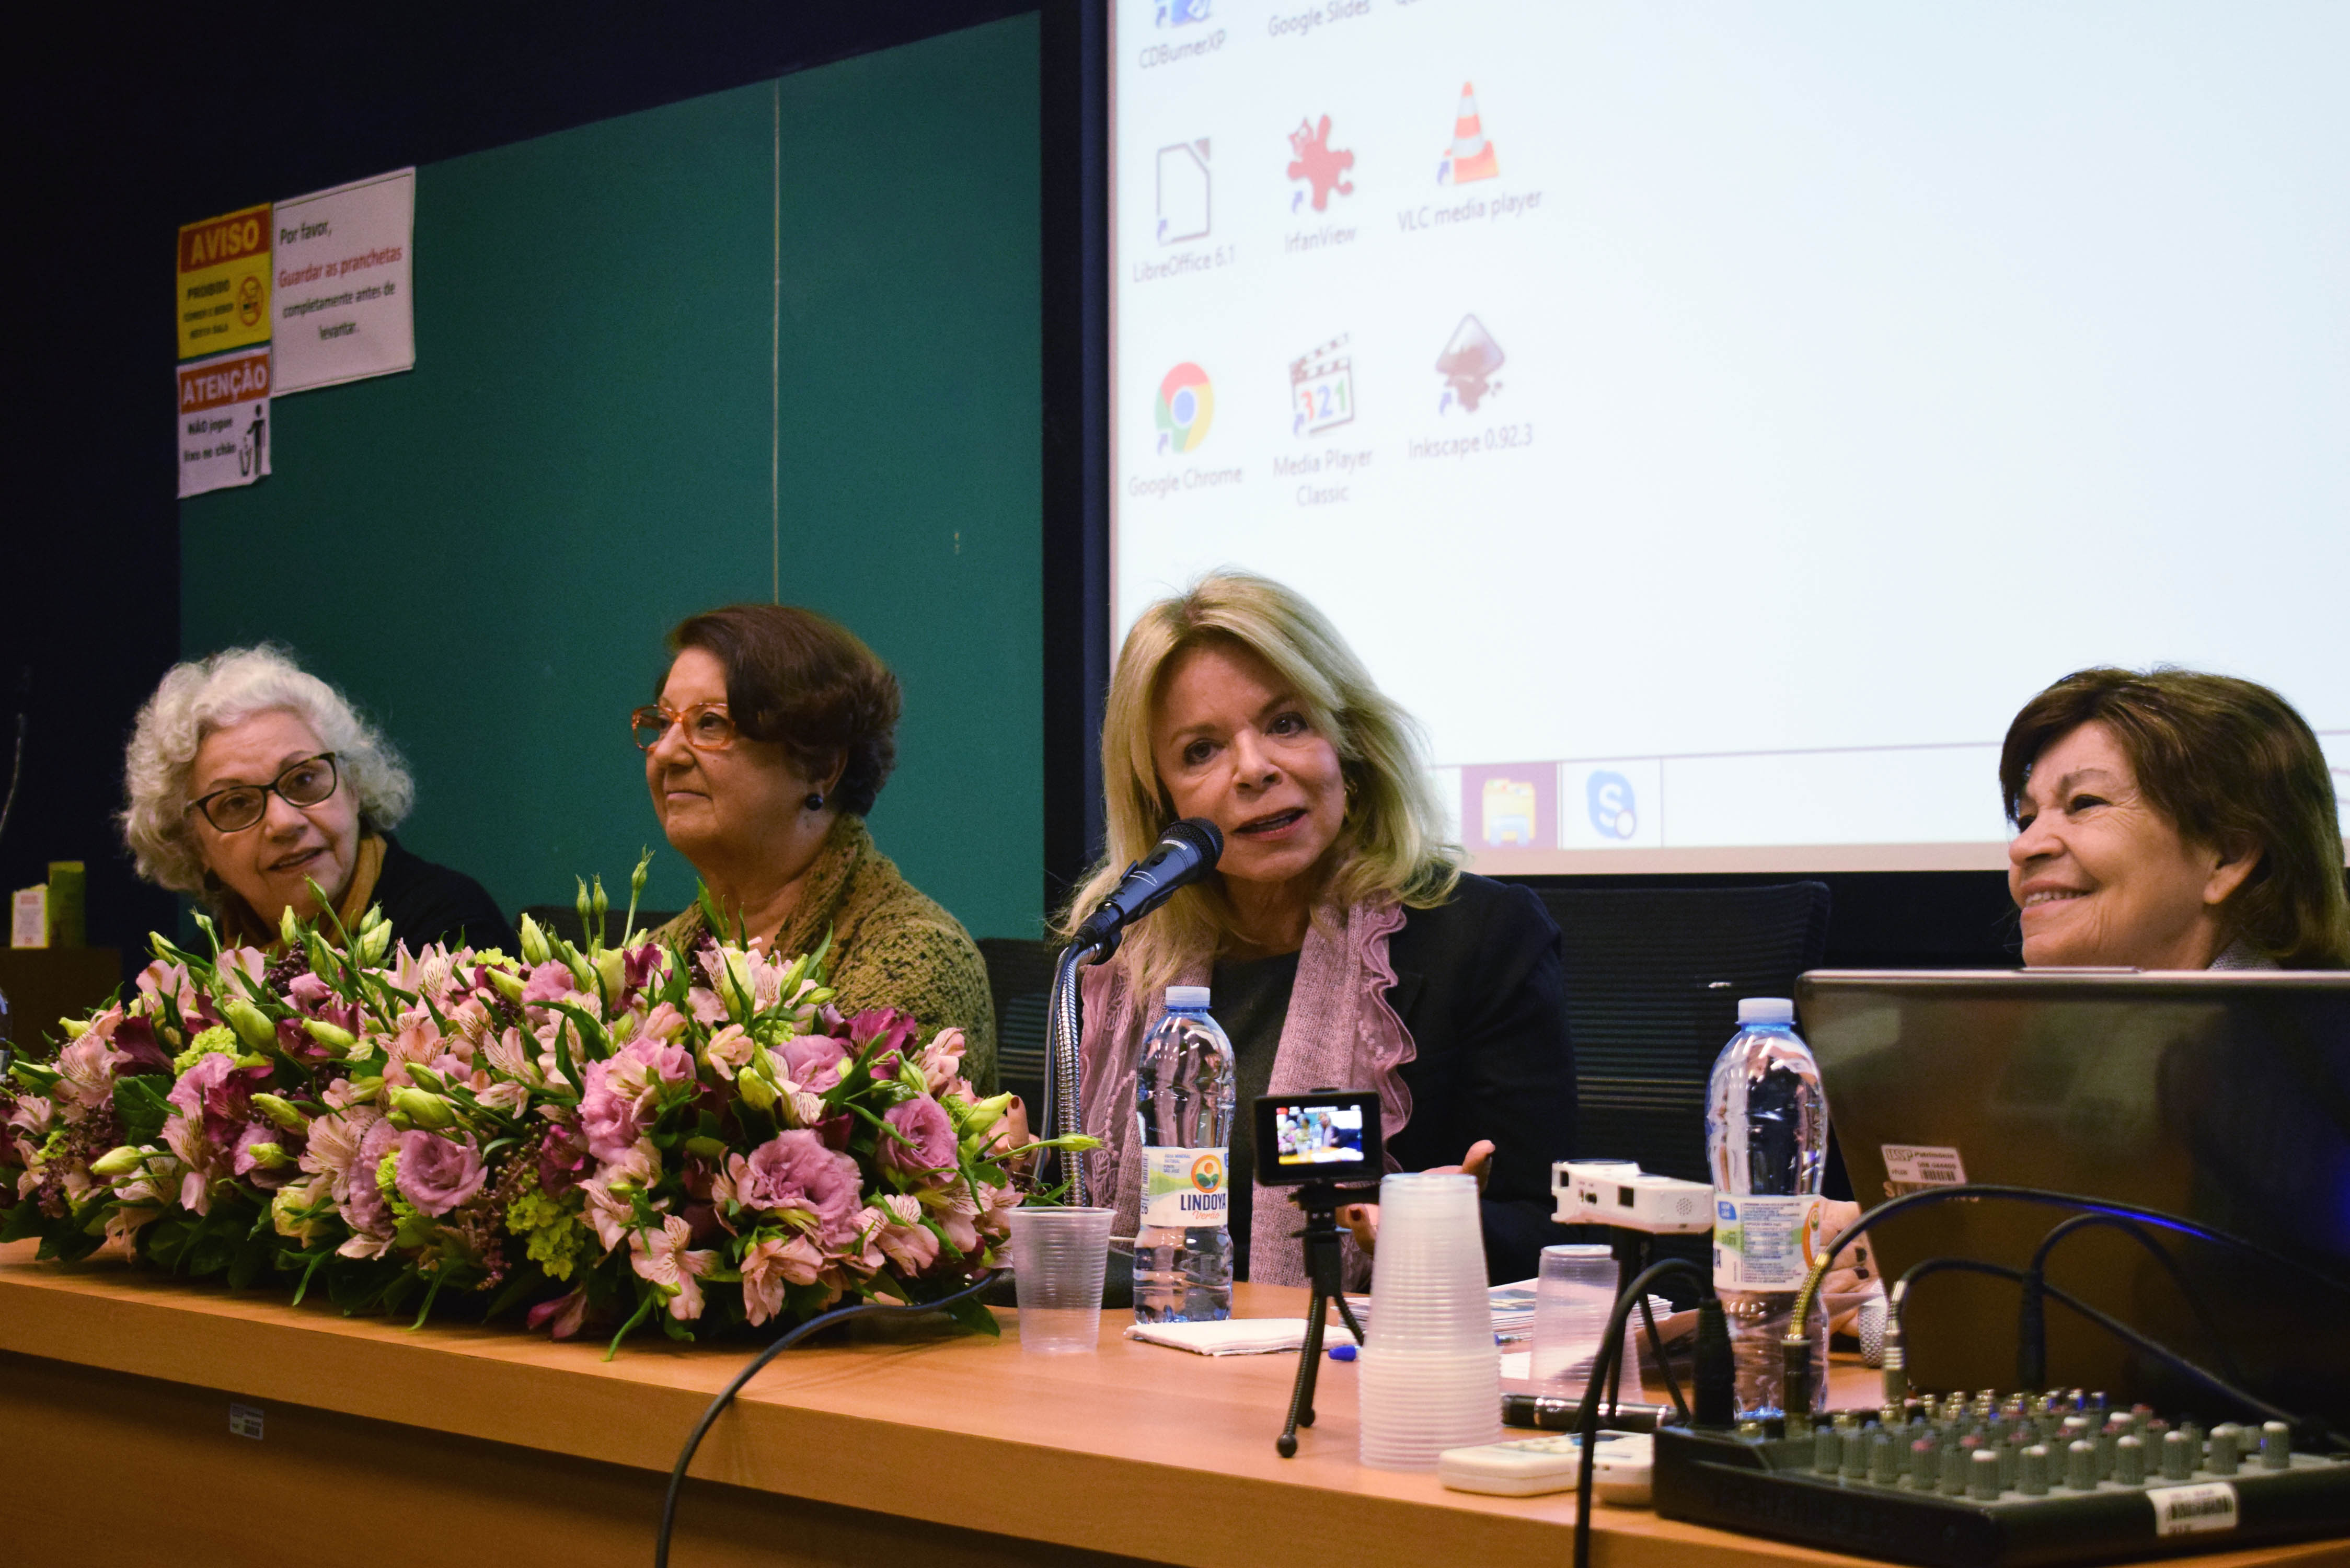 participantes da mesa-redonda em homenagem ao aniversário da professora Maria Isaura Pereira de Queiroz